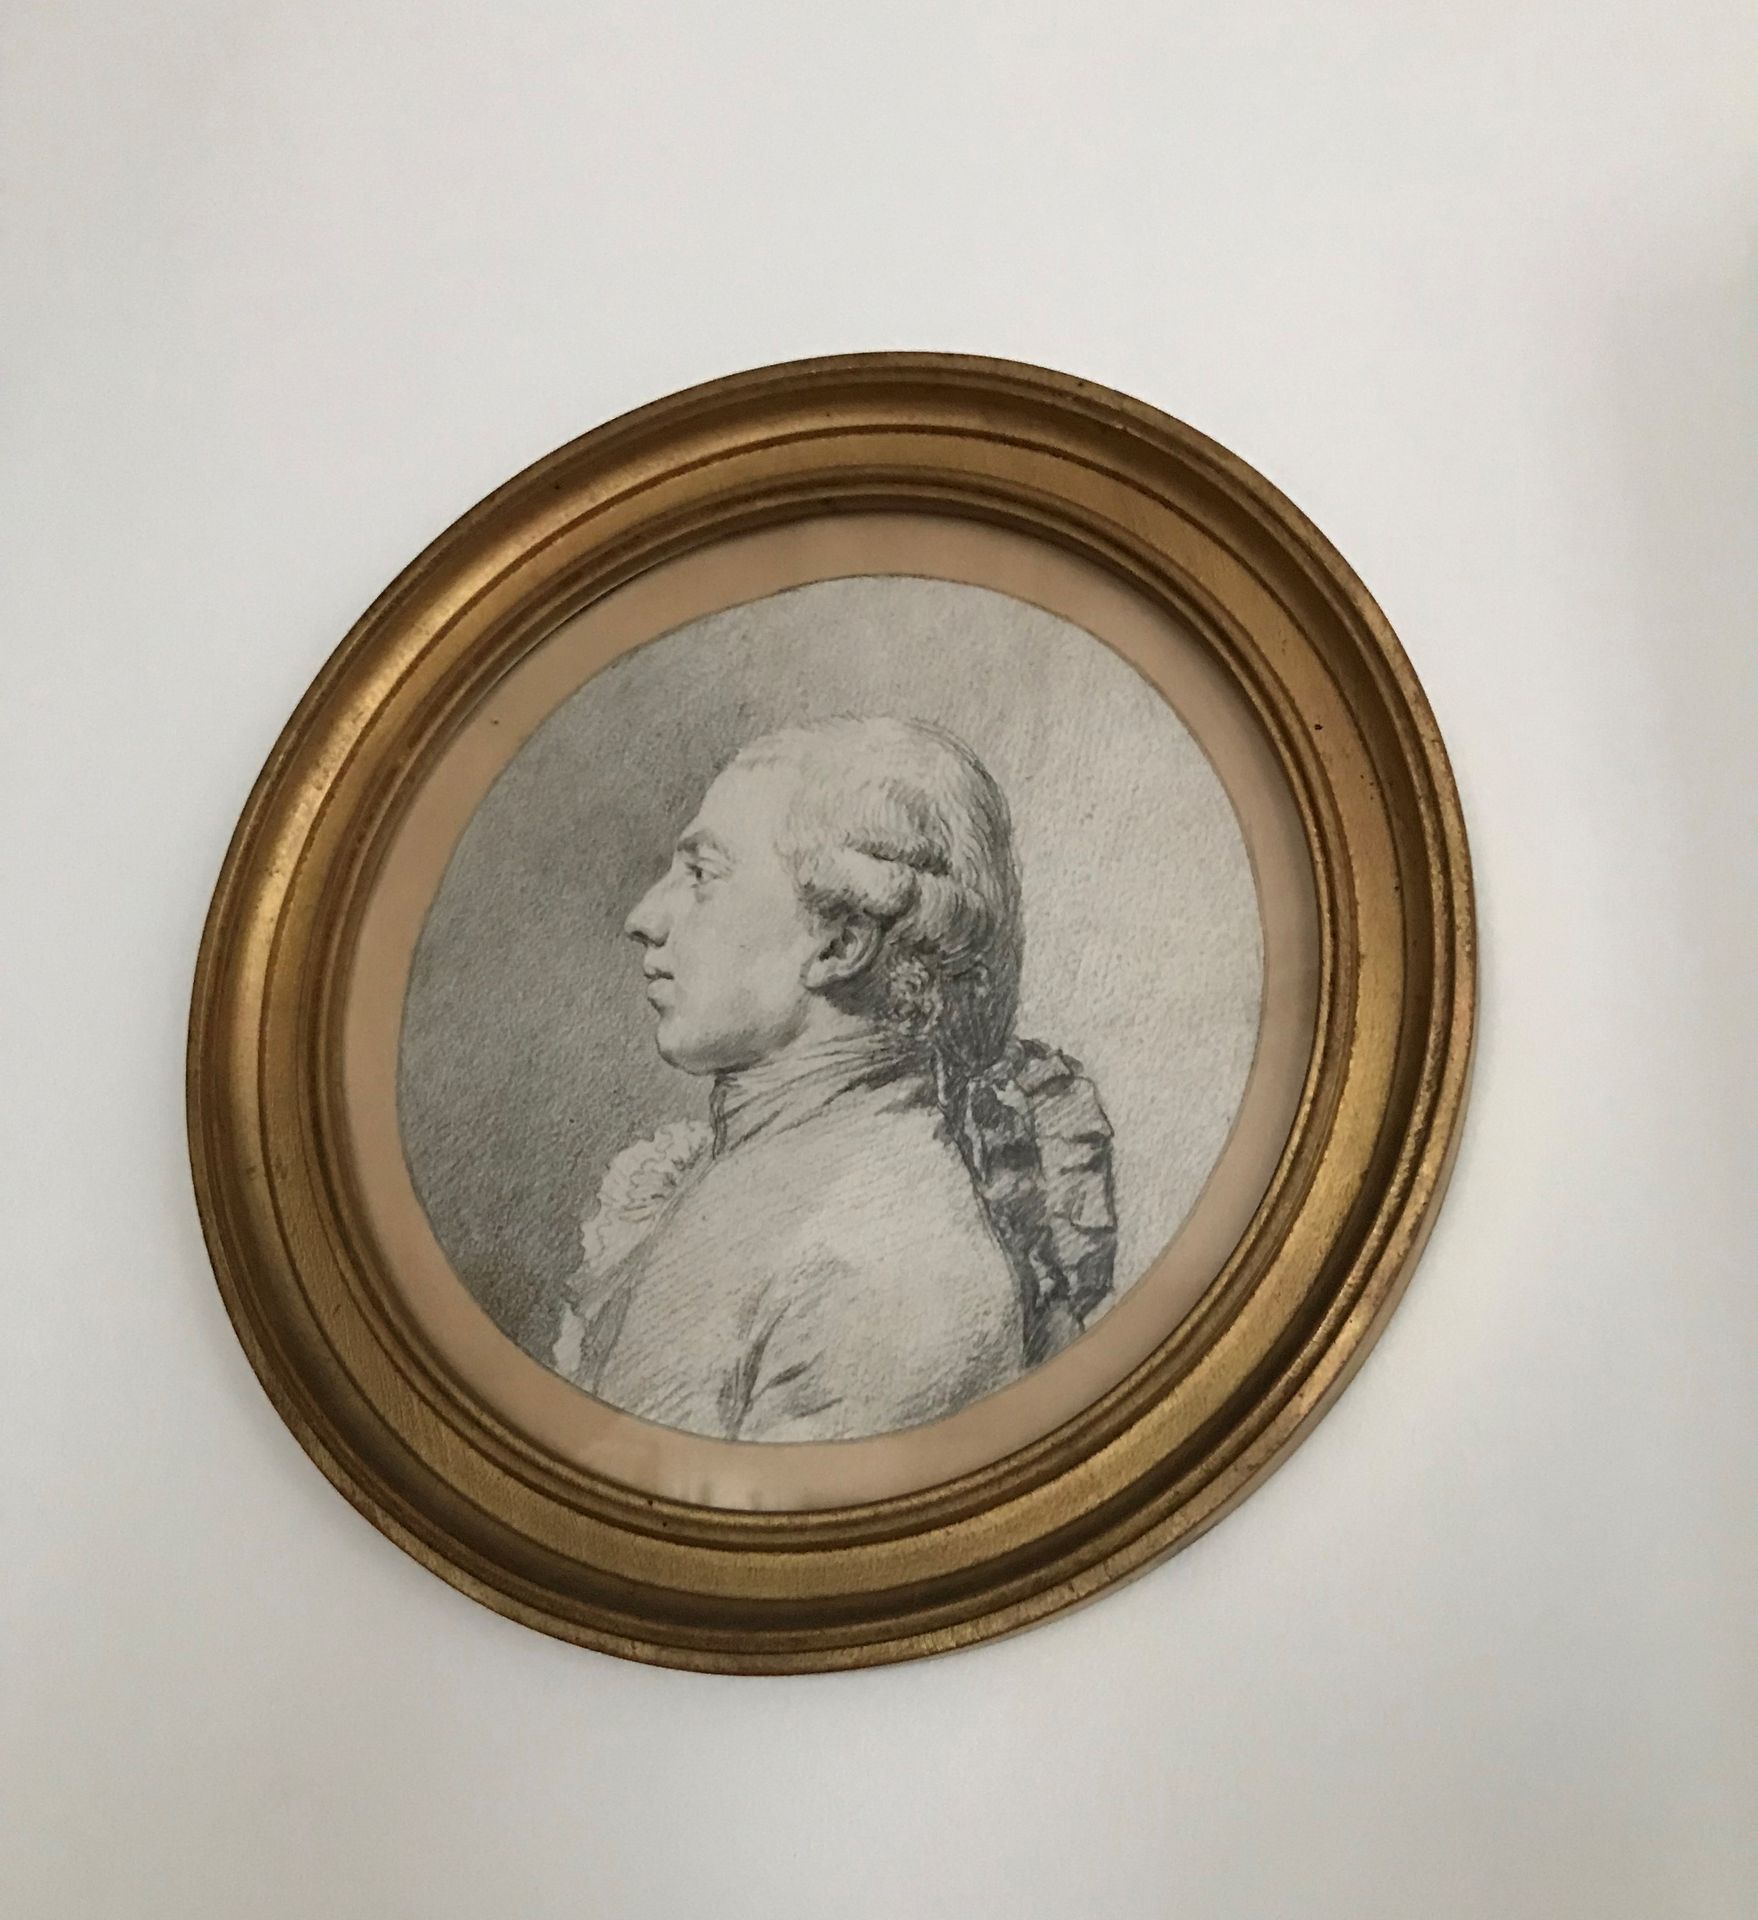 Ecole Française du XVIIIème siècle 
男人的肖像
黑石
D. 16厘米。